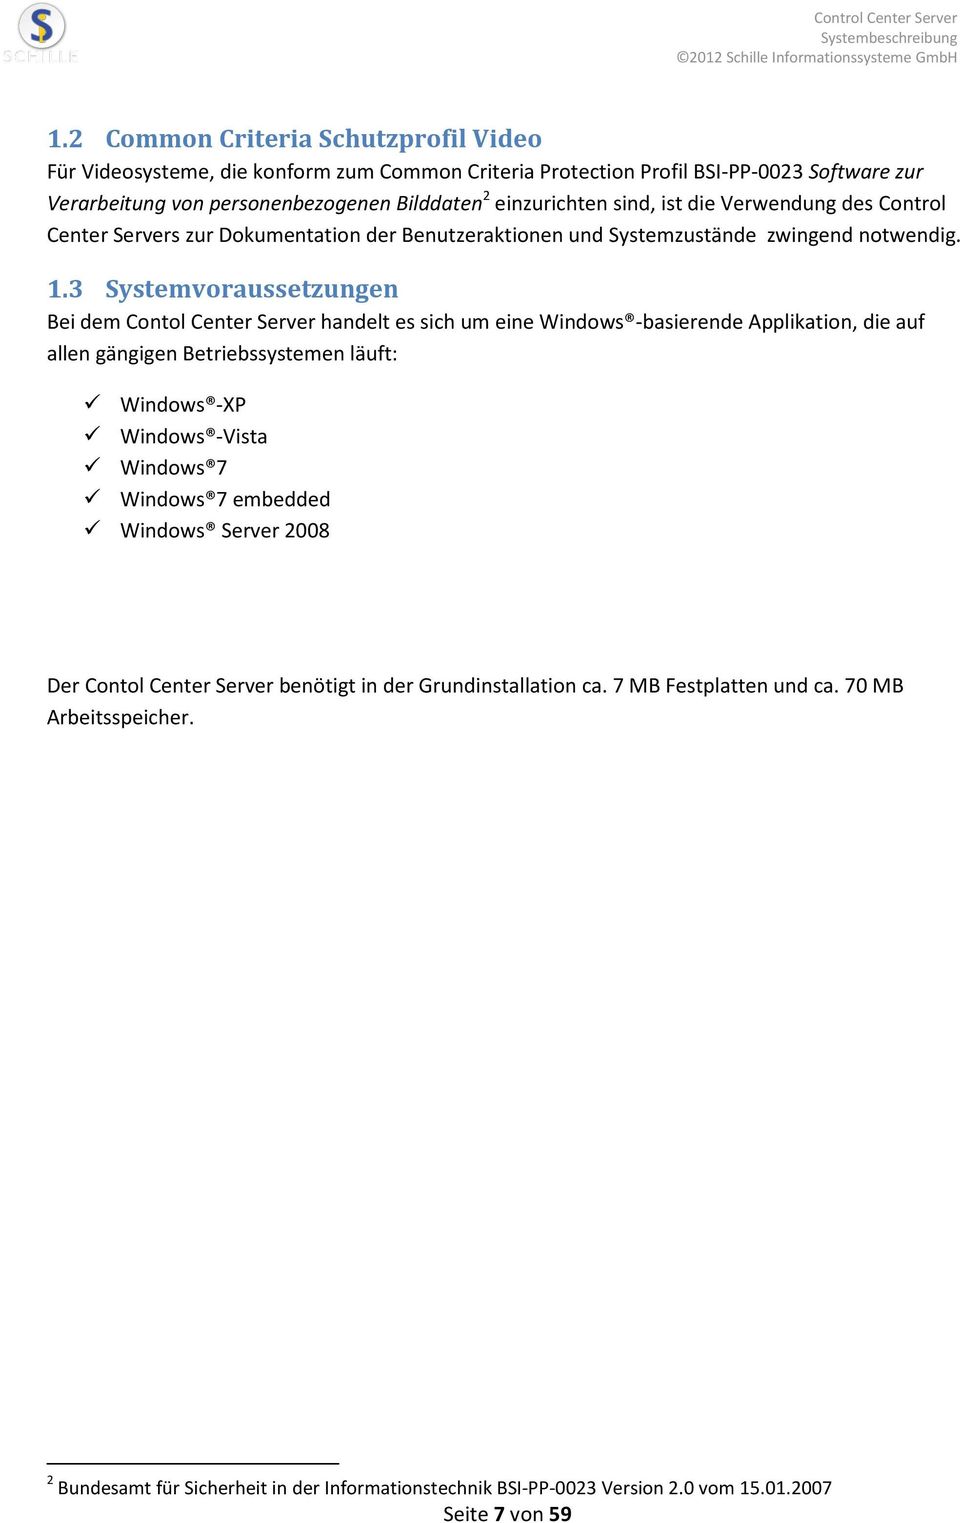 3 Systemvoraussetzungen Bei dem Contol Center Server handelt es sich um eine Windows -basierende Applikation, die auf allen gängigen Betriebssystemen läuft: Windows -XP Windows -Vista Windows 7